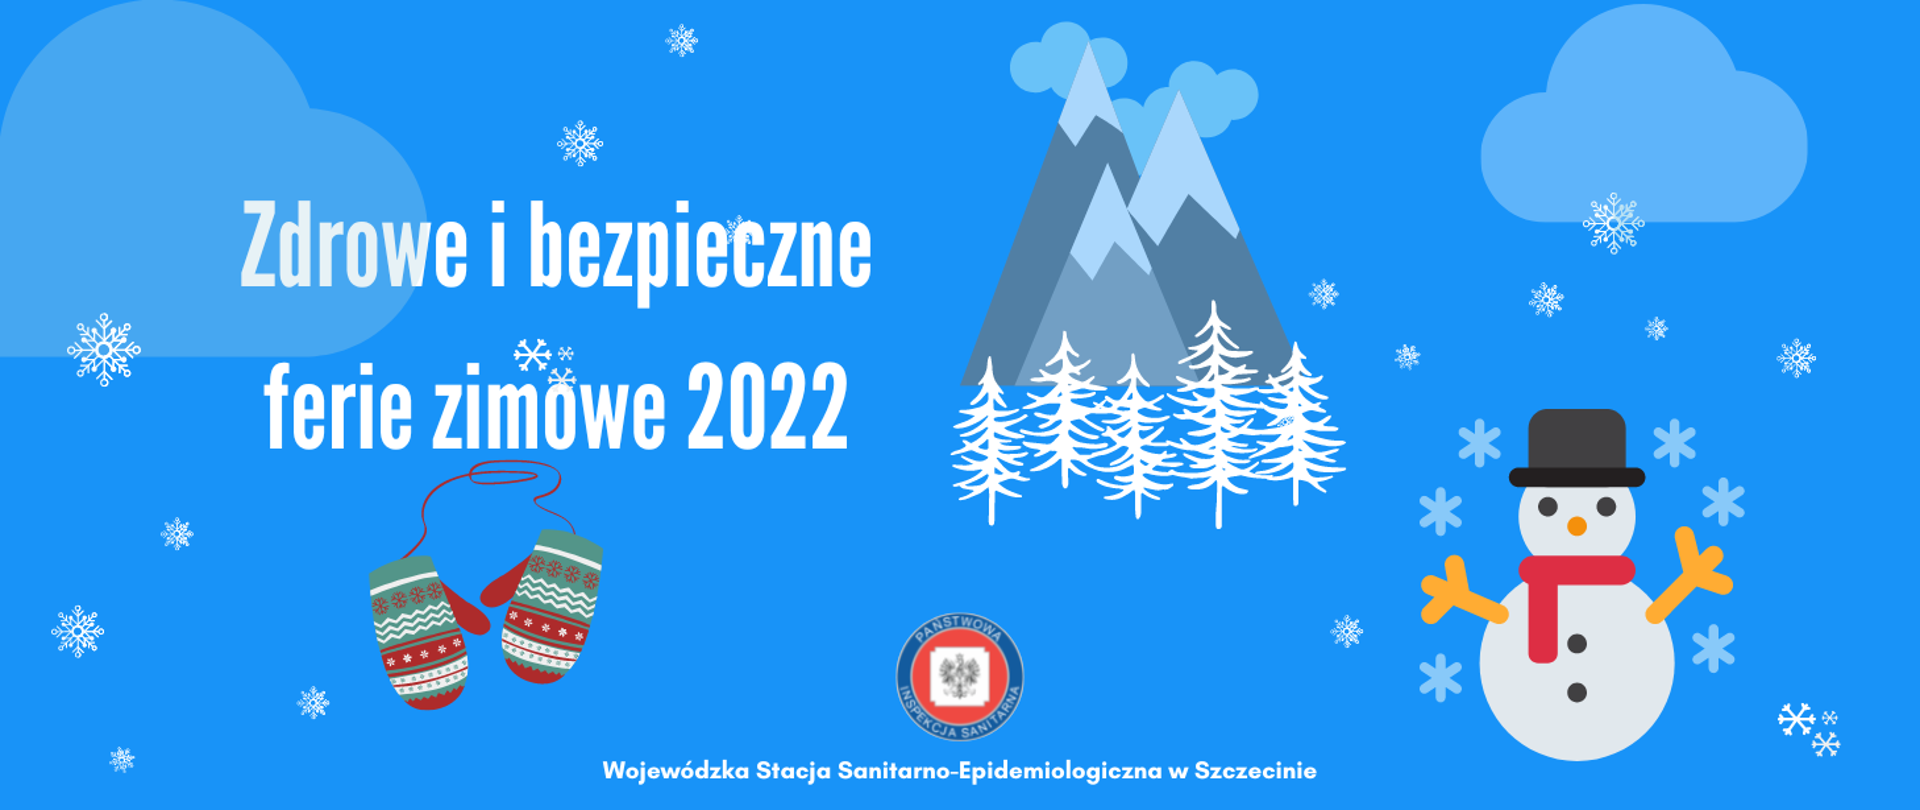 Grafika przedstawia symbole zimy: góry, zaśnieżone choinki, rękawiczki, płatki śniegu oraz bałwana. Po lewej stronie widnieje napis Zdrowe i bezpieczne ferie zimowe 2022. Na dole grafiki (po środku) widnieje logo Państwowej Inspekcji Sanitarnej a pod nim napis Wojewódzka Stacja Sanitarno - Epidemiologiczna w Szczecinie.